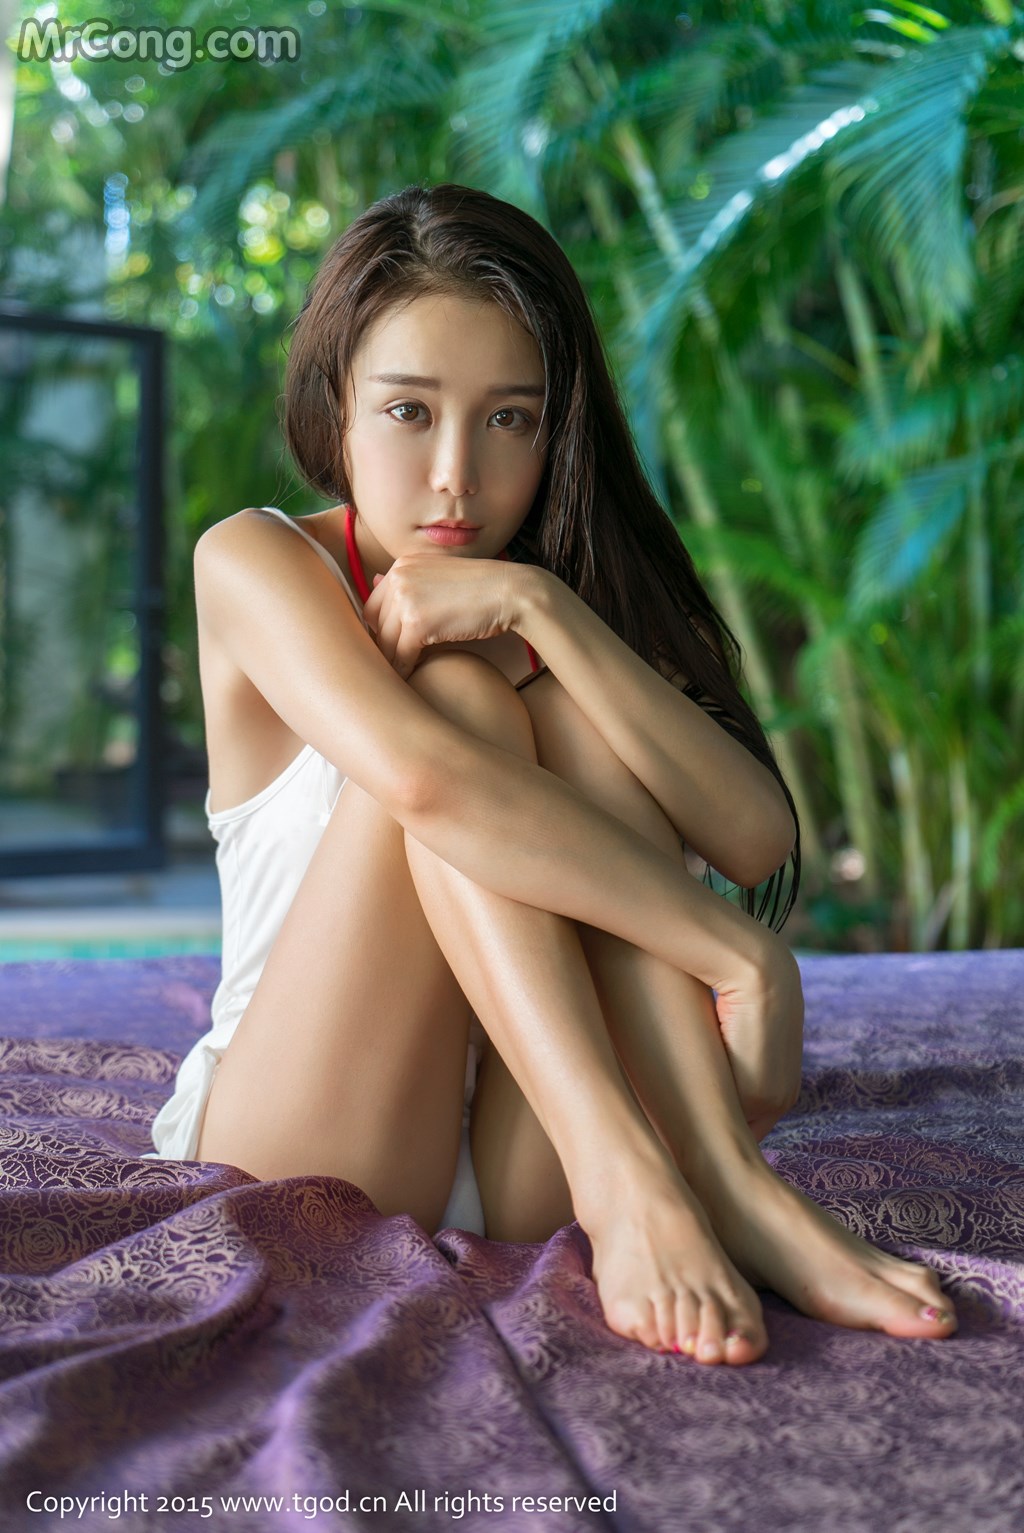 TGOD 2015-12-15: Model Xiao Jiu Vin (小 九 Vin) (31 photos)